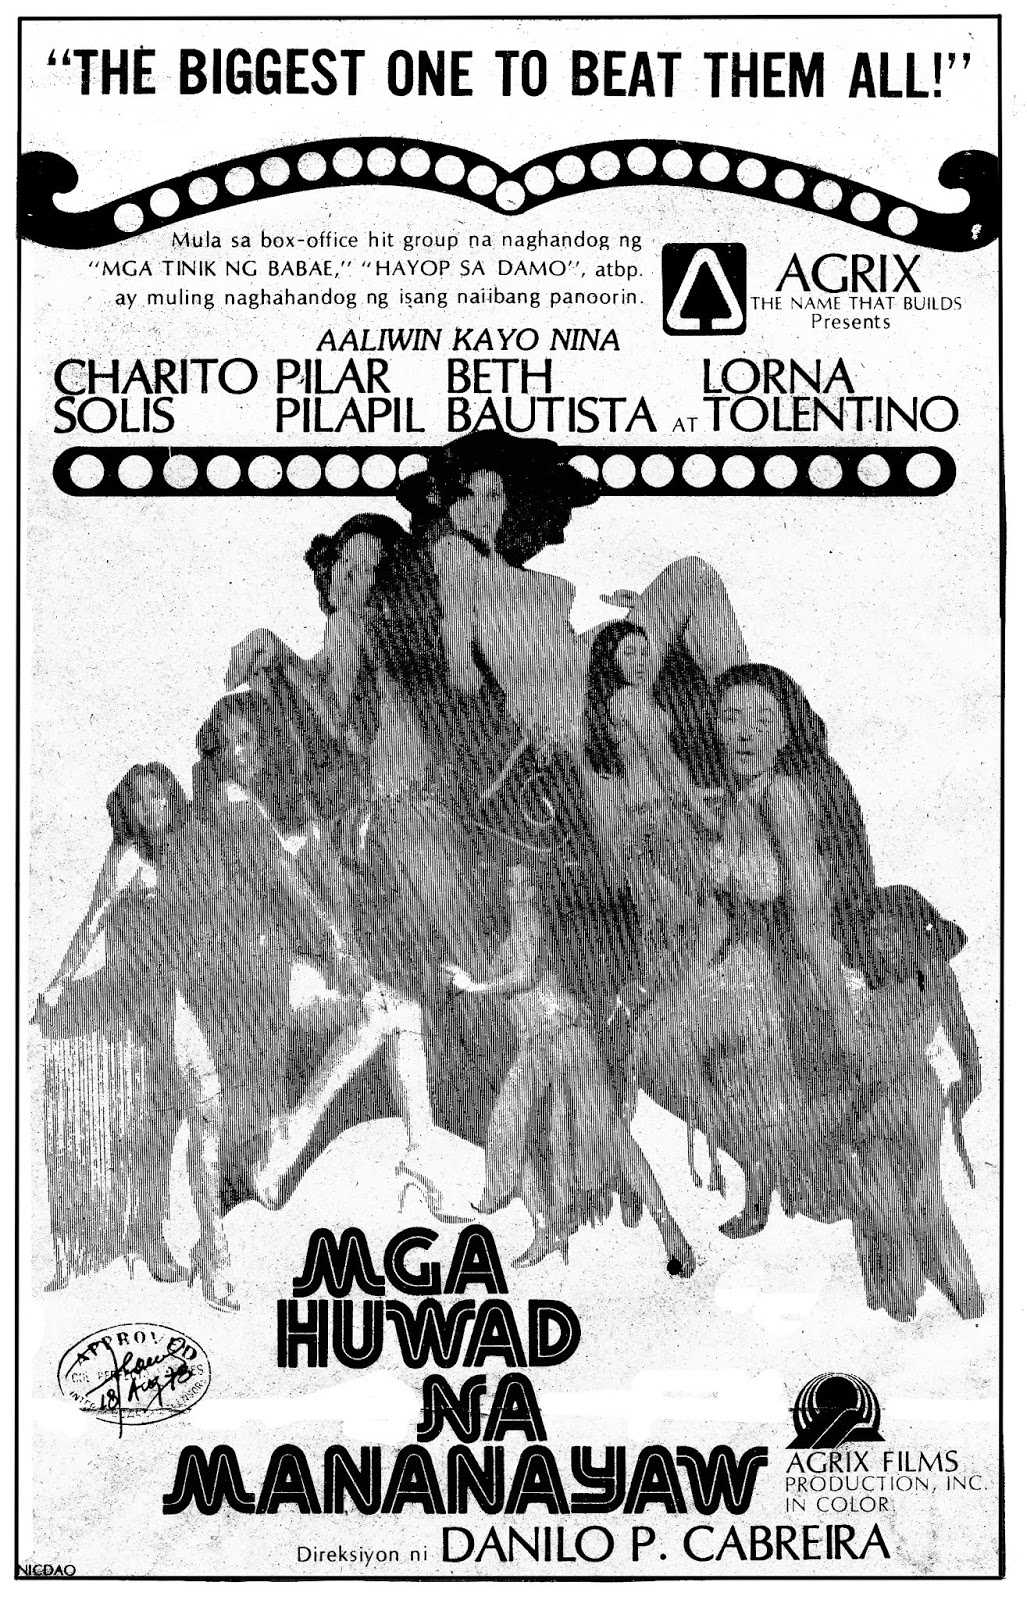 Mga Huwad Na Mananayaw 1979 movie poster